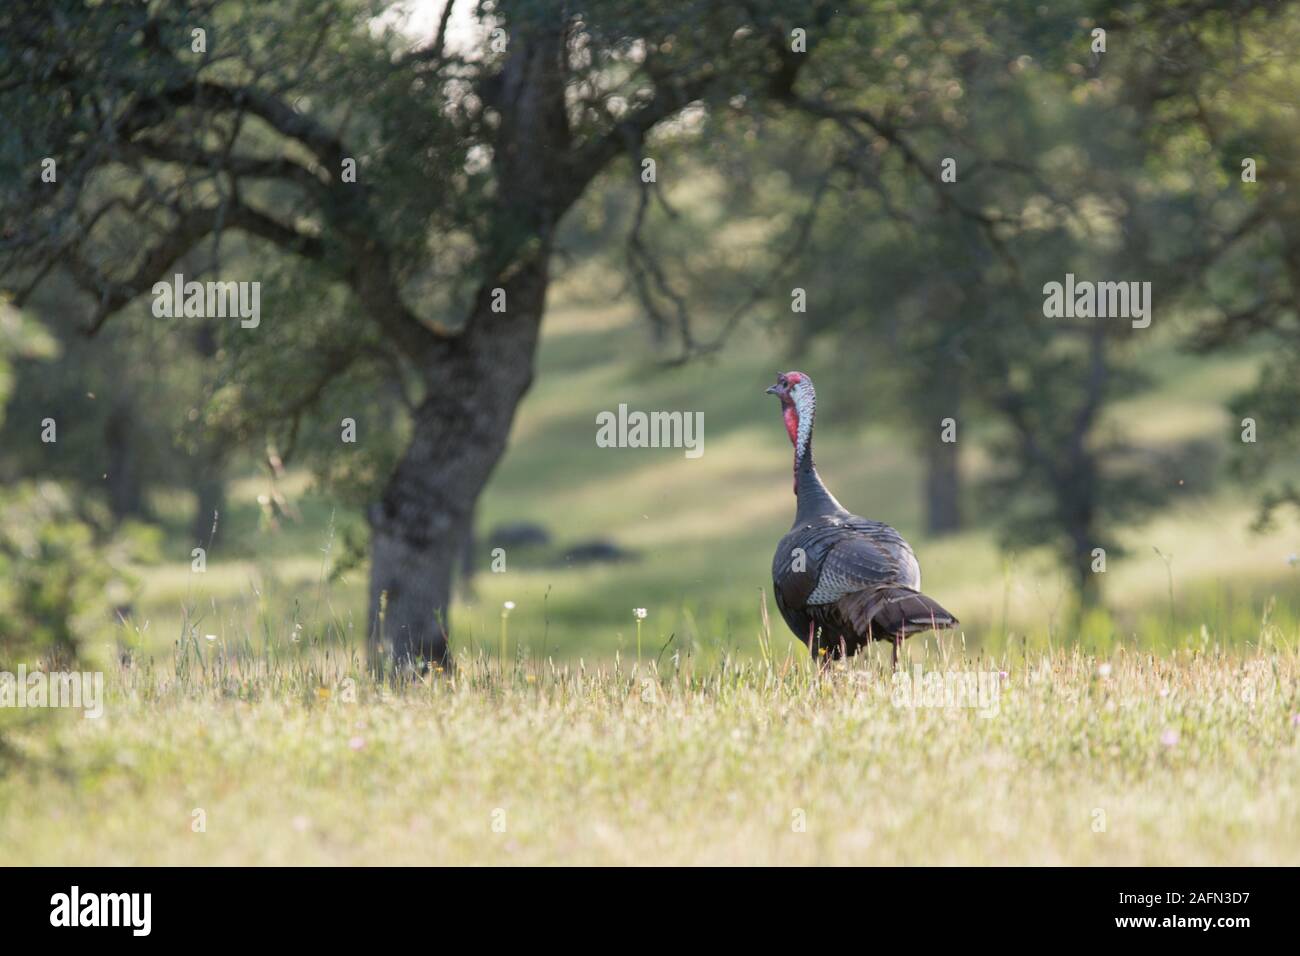 Wild turkey running through grasslands Stock Photo